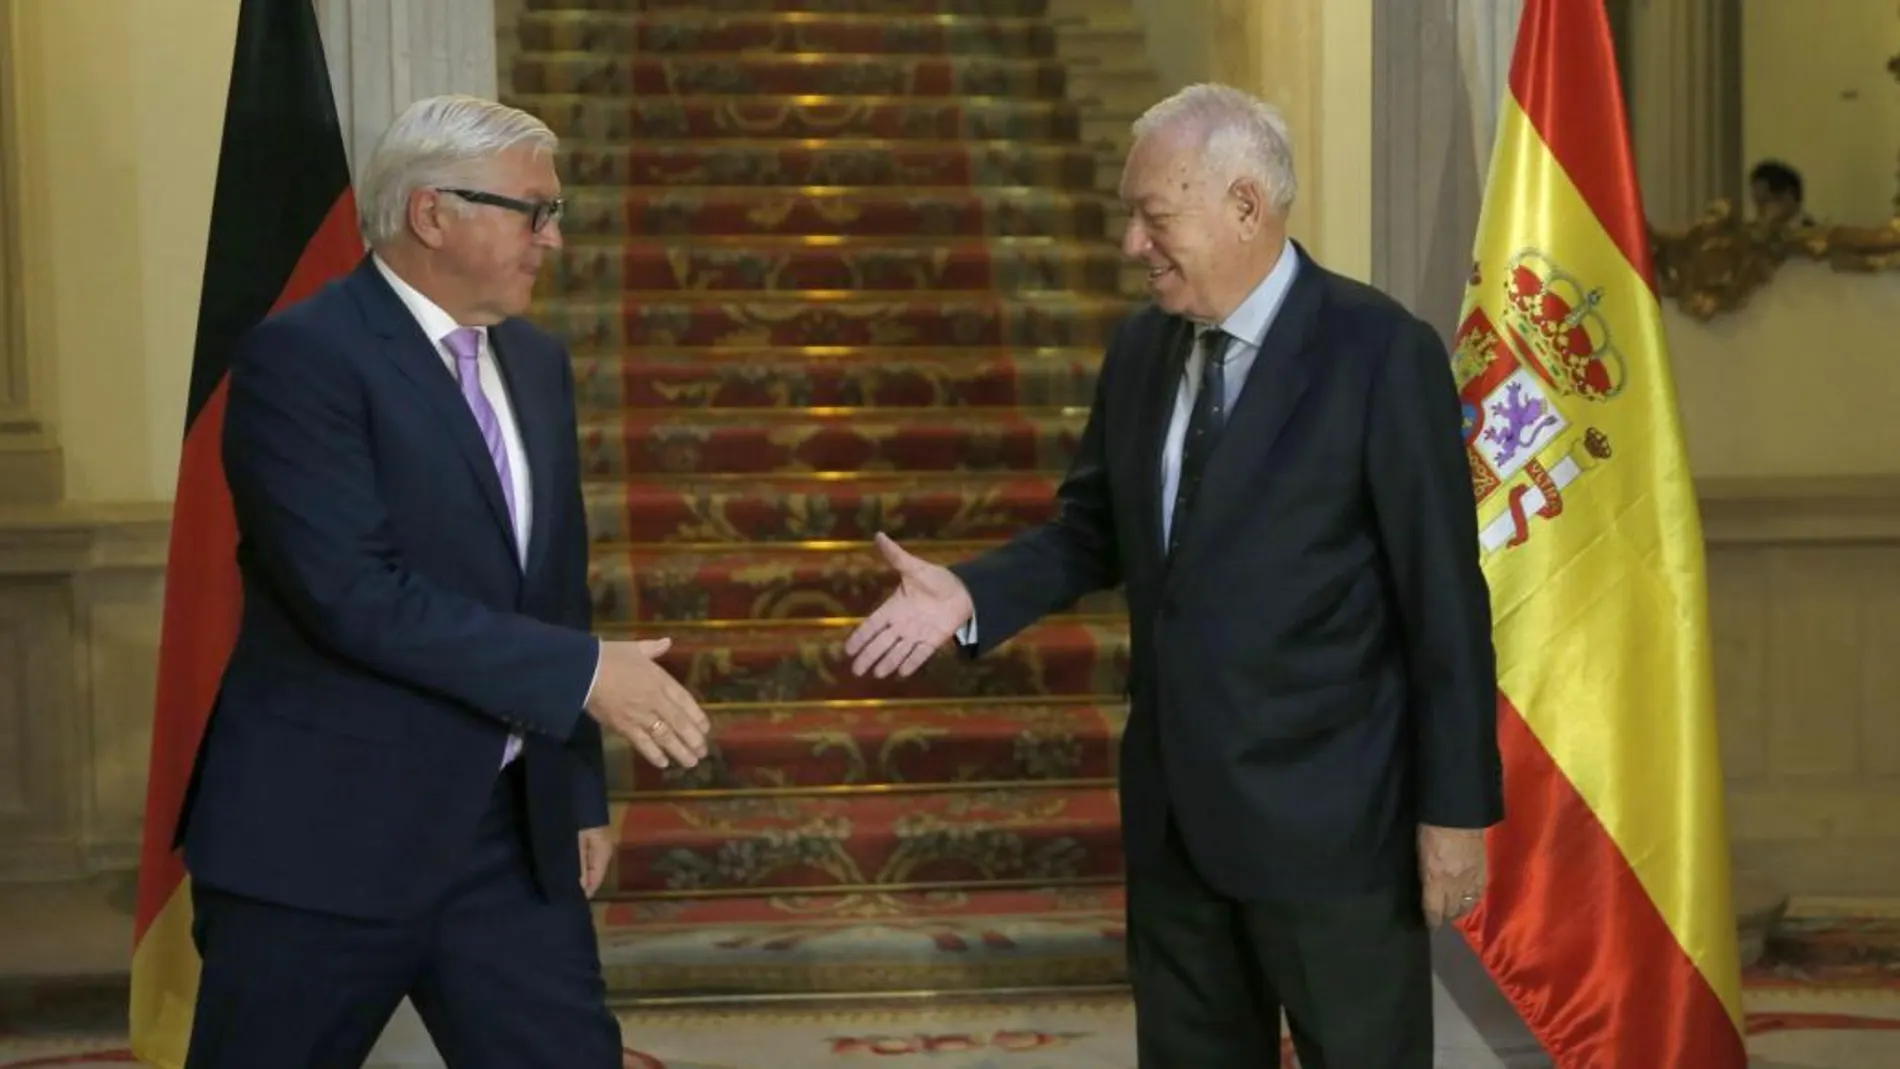 El ministro de Asuntos Exteriores y Cooperación, José Manuel García-Margallo (d), y su homólogo alemán, Frank-Walter Steinmeier (i), momentos antes de la reunión que han mantenido esta mañana.